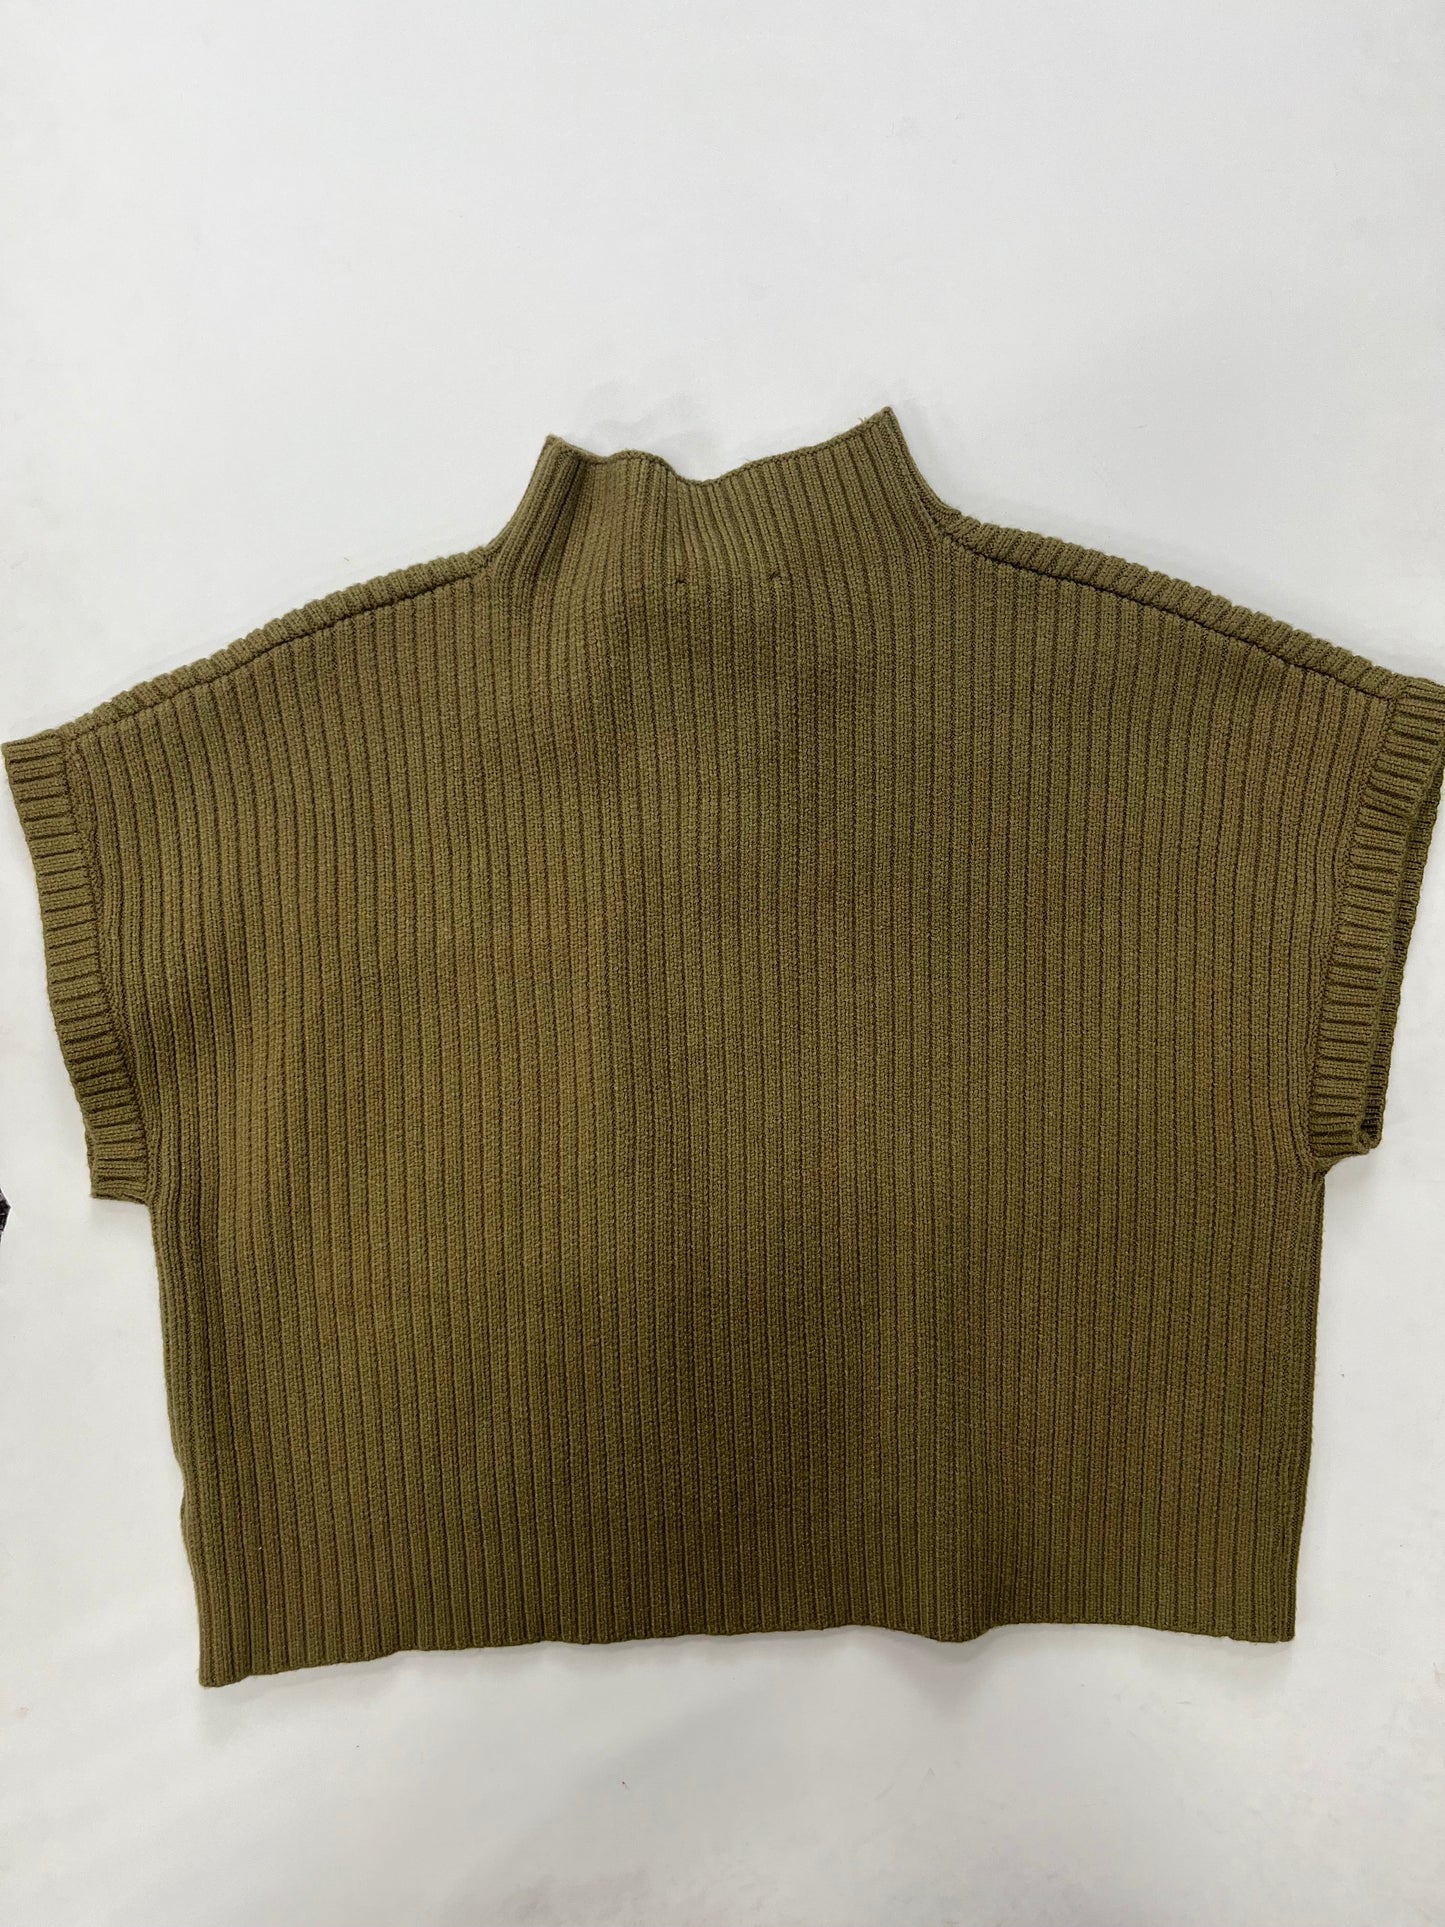 Olive Sweater Short Sleeve Entro, Size S